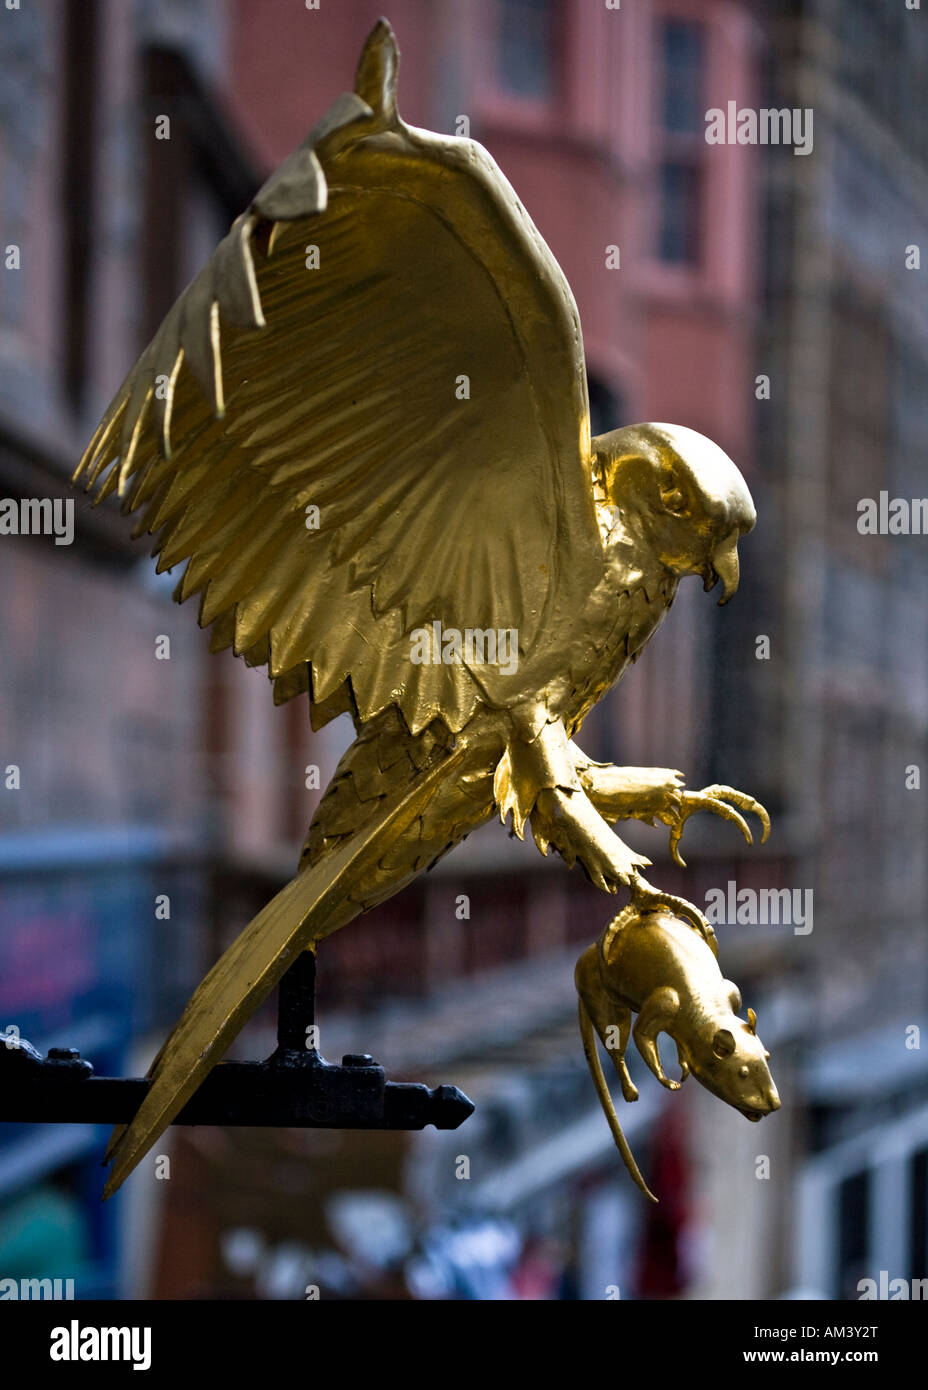 Diese golden Hawk und Ratte Skulptur sitzt oben auf einer Straße Wegweiser in Edinburgh High Street, Royal Mile, Schottland. Stockfoto